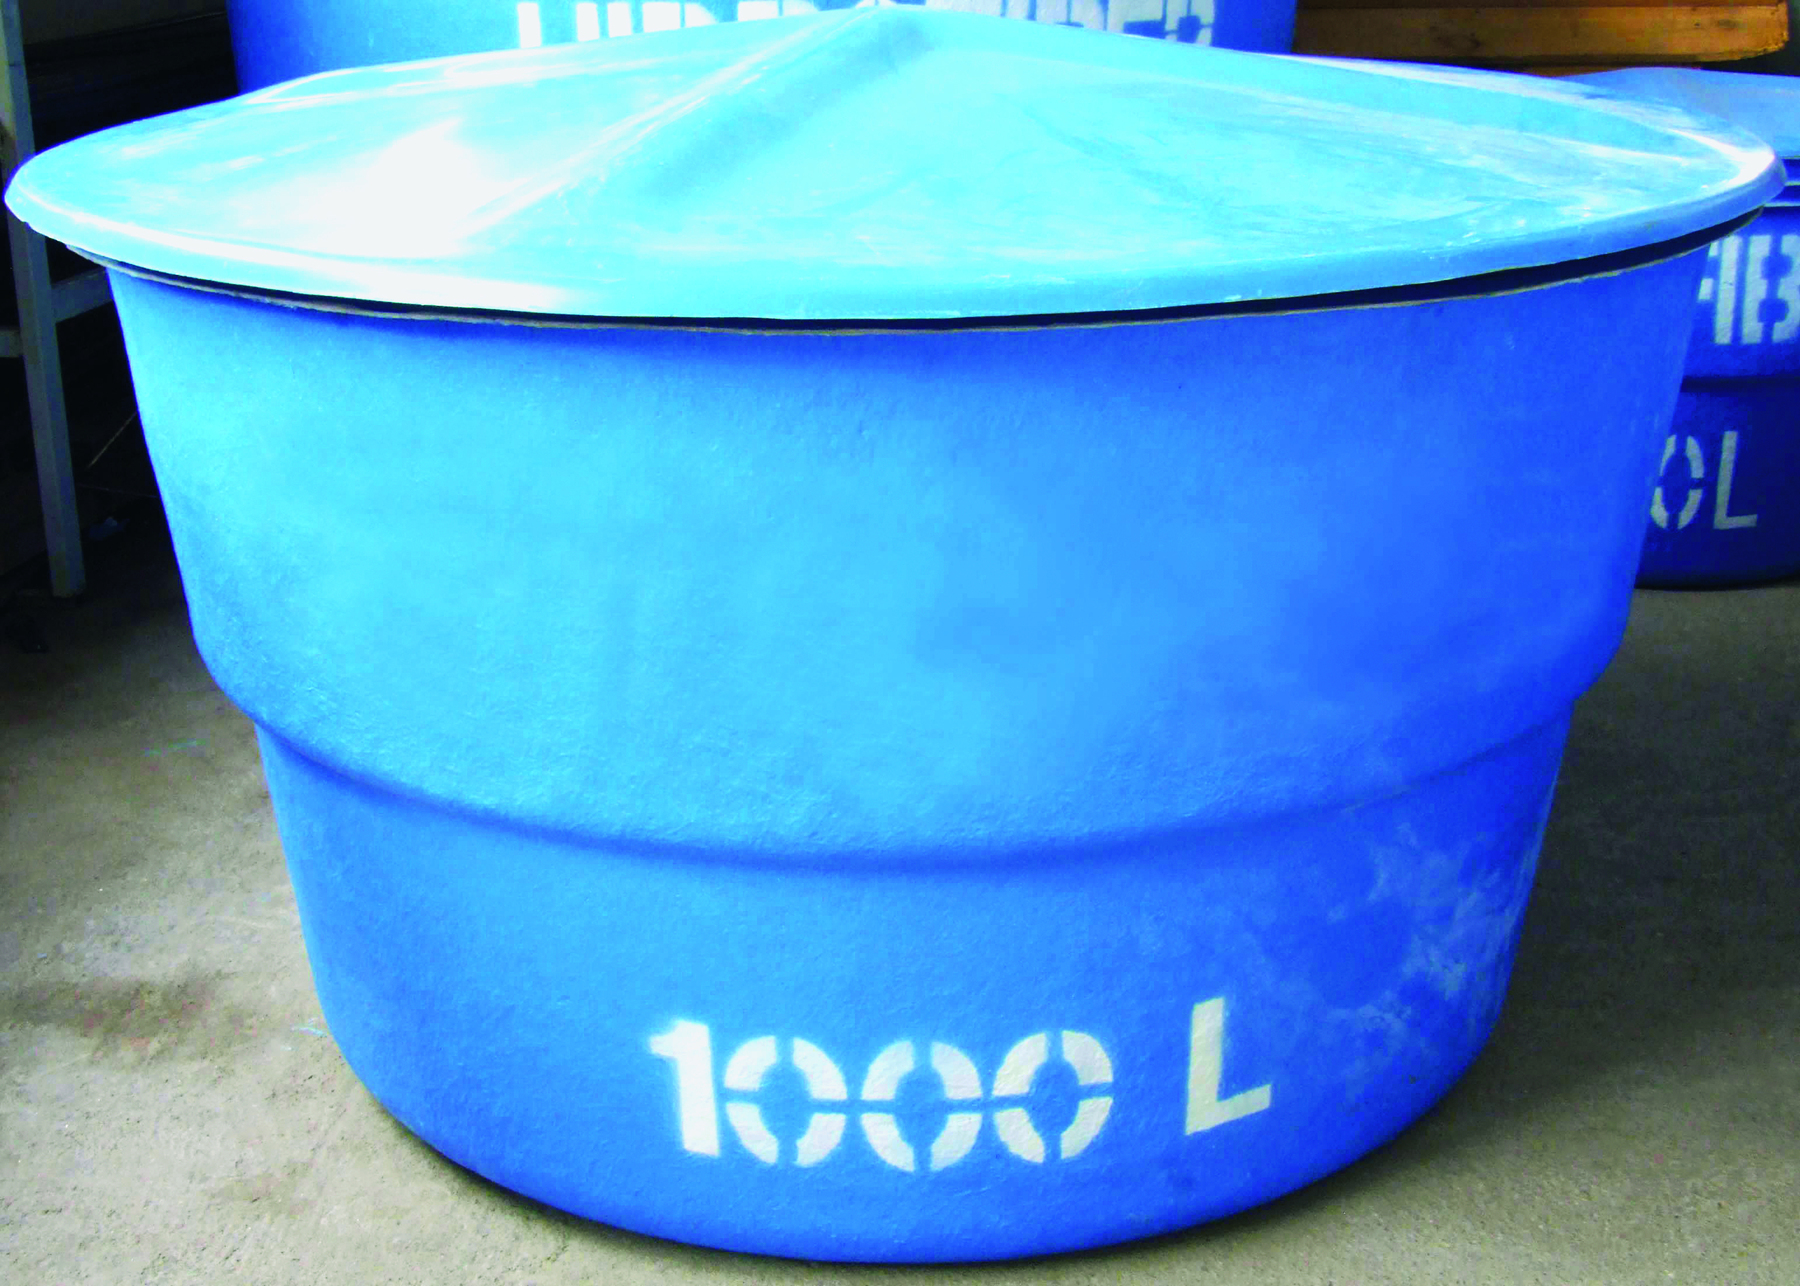 Fotografia. Caixa d’água azul com capacidade de 1000 litros.